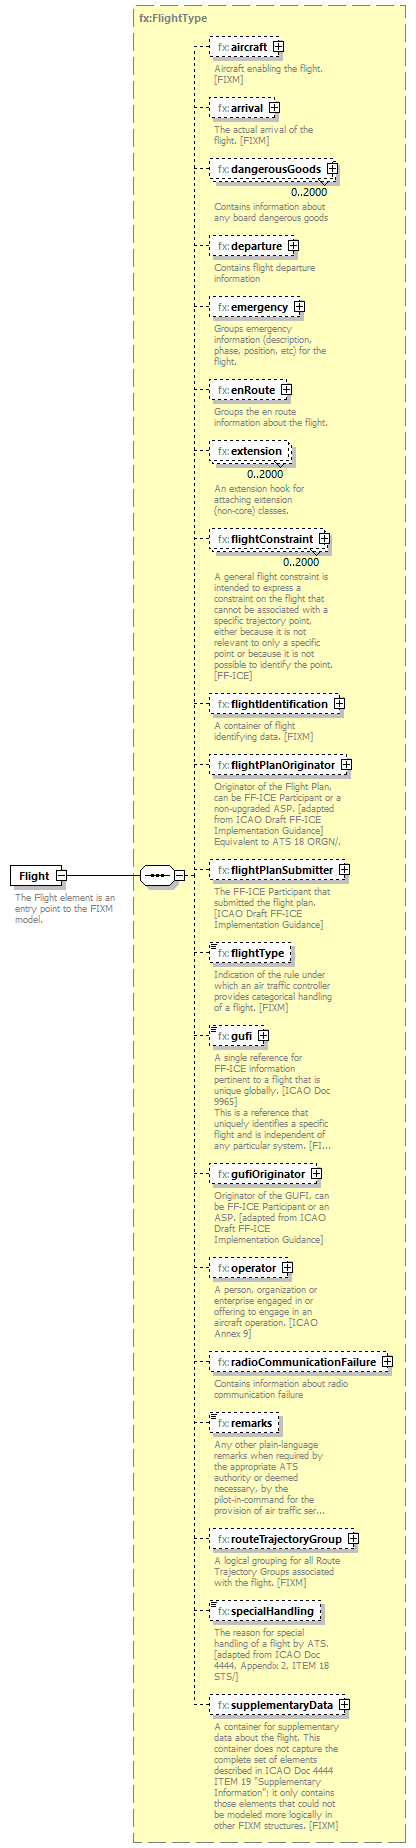 Fixm_diagrams/Fixm_p313.png